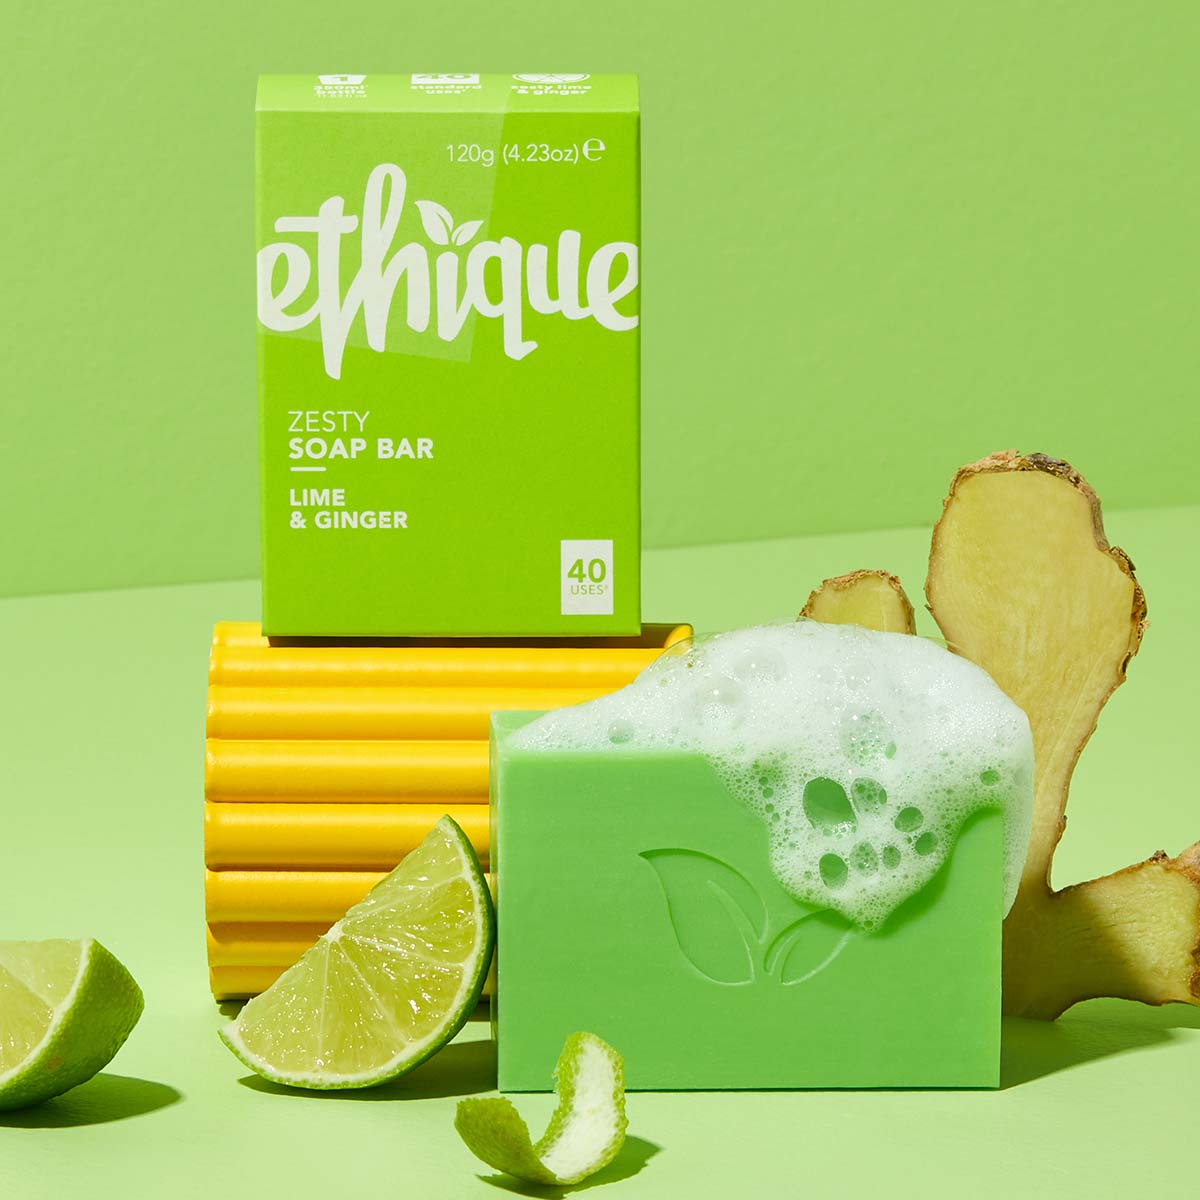 Ethique Bodywash, Pumice, Tea Tree & Spearmint - 4.23 oz